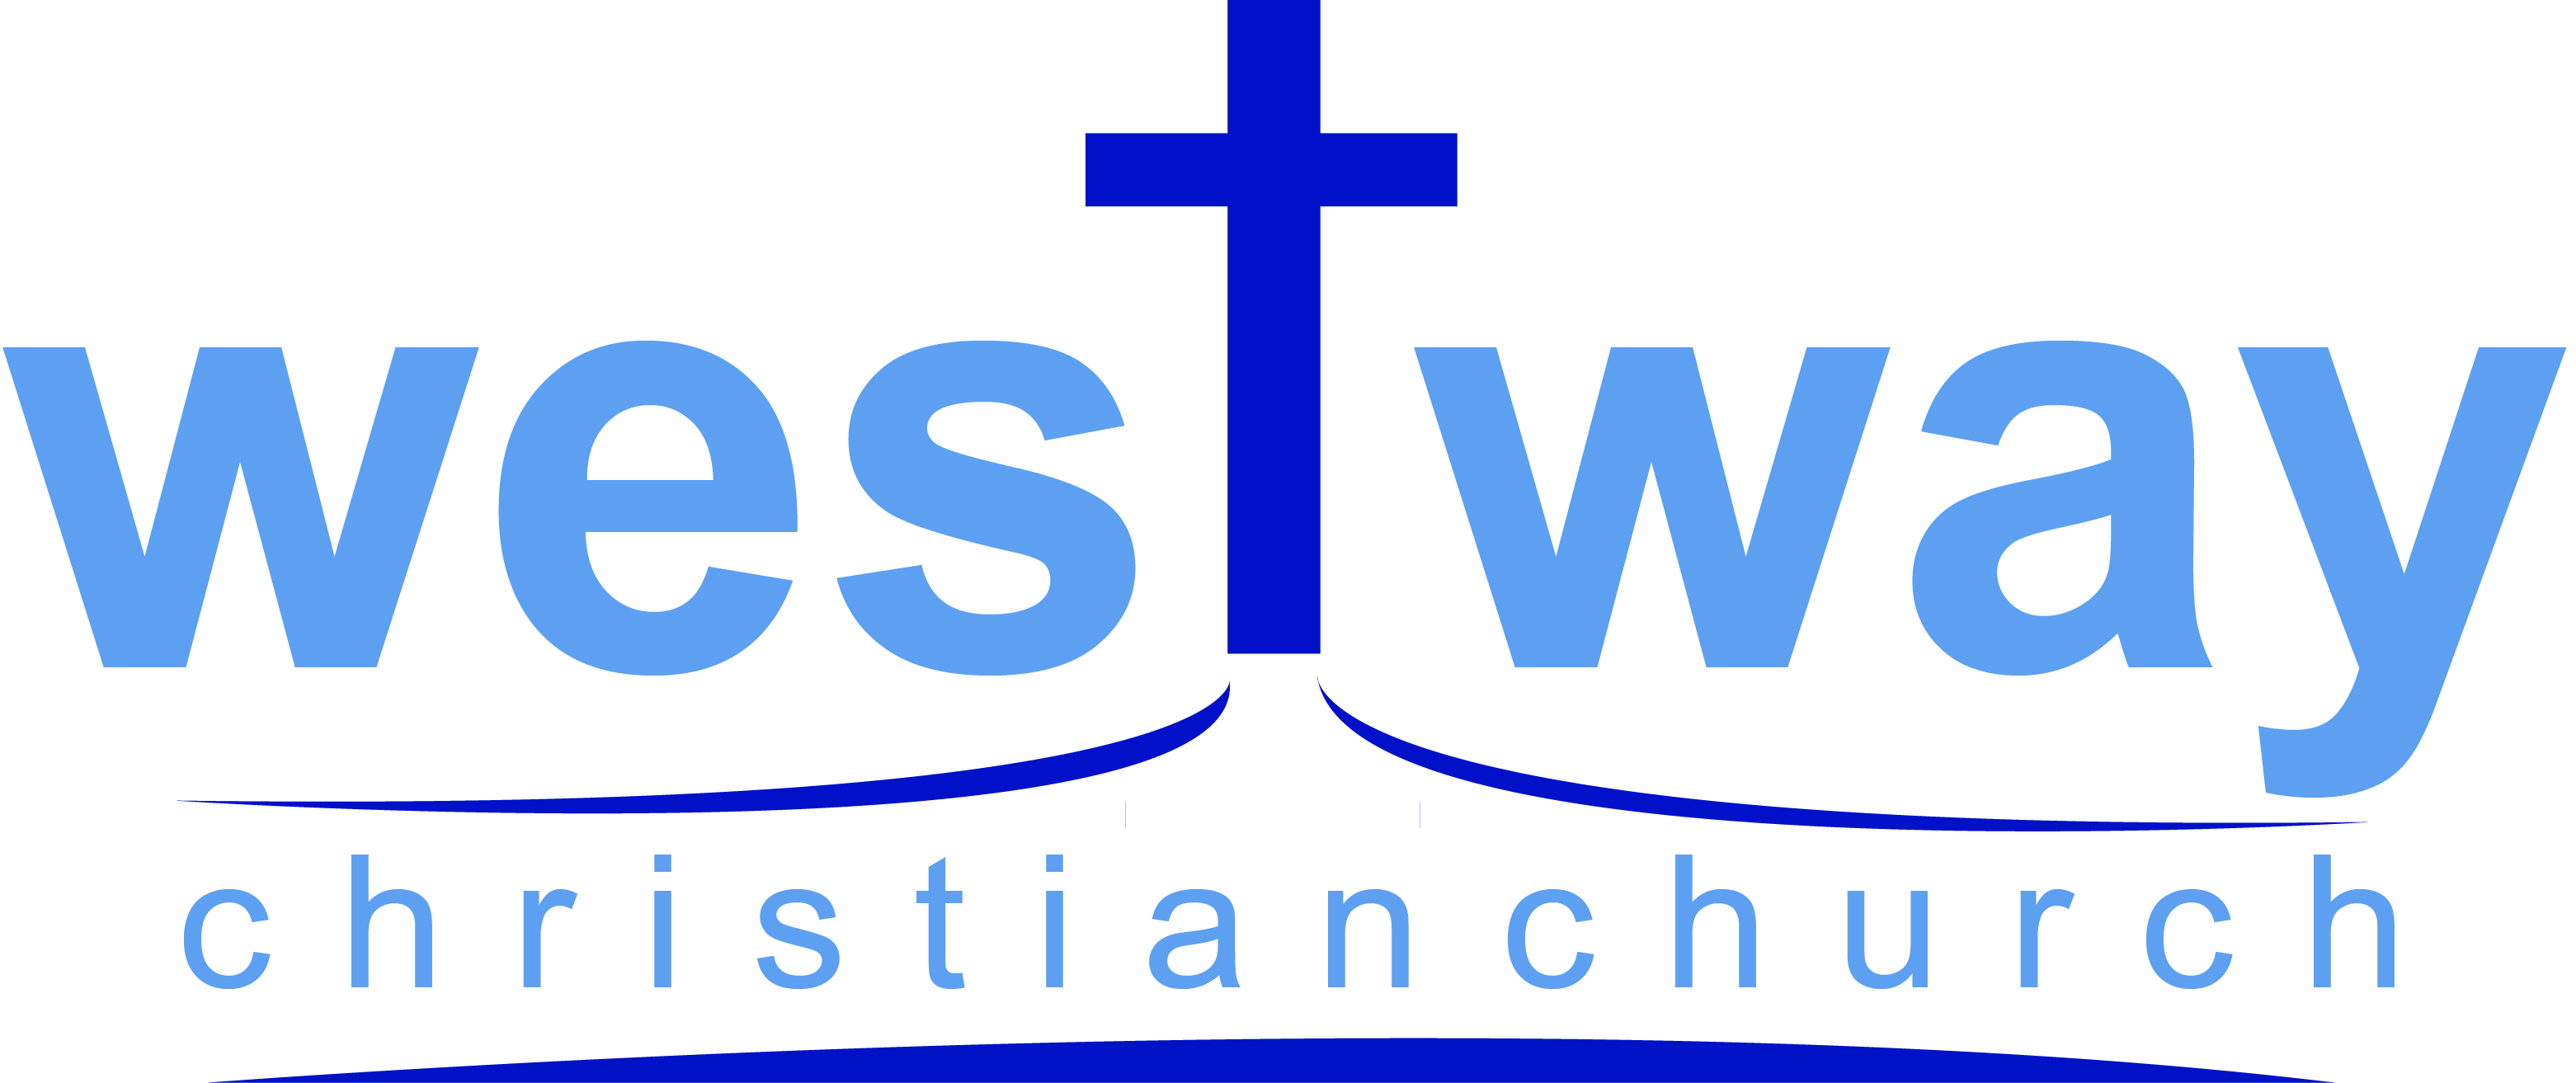 WESTWAY CHRISTIAN CHURCH INC. logo